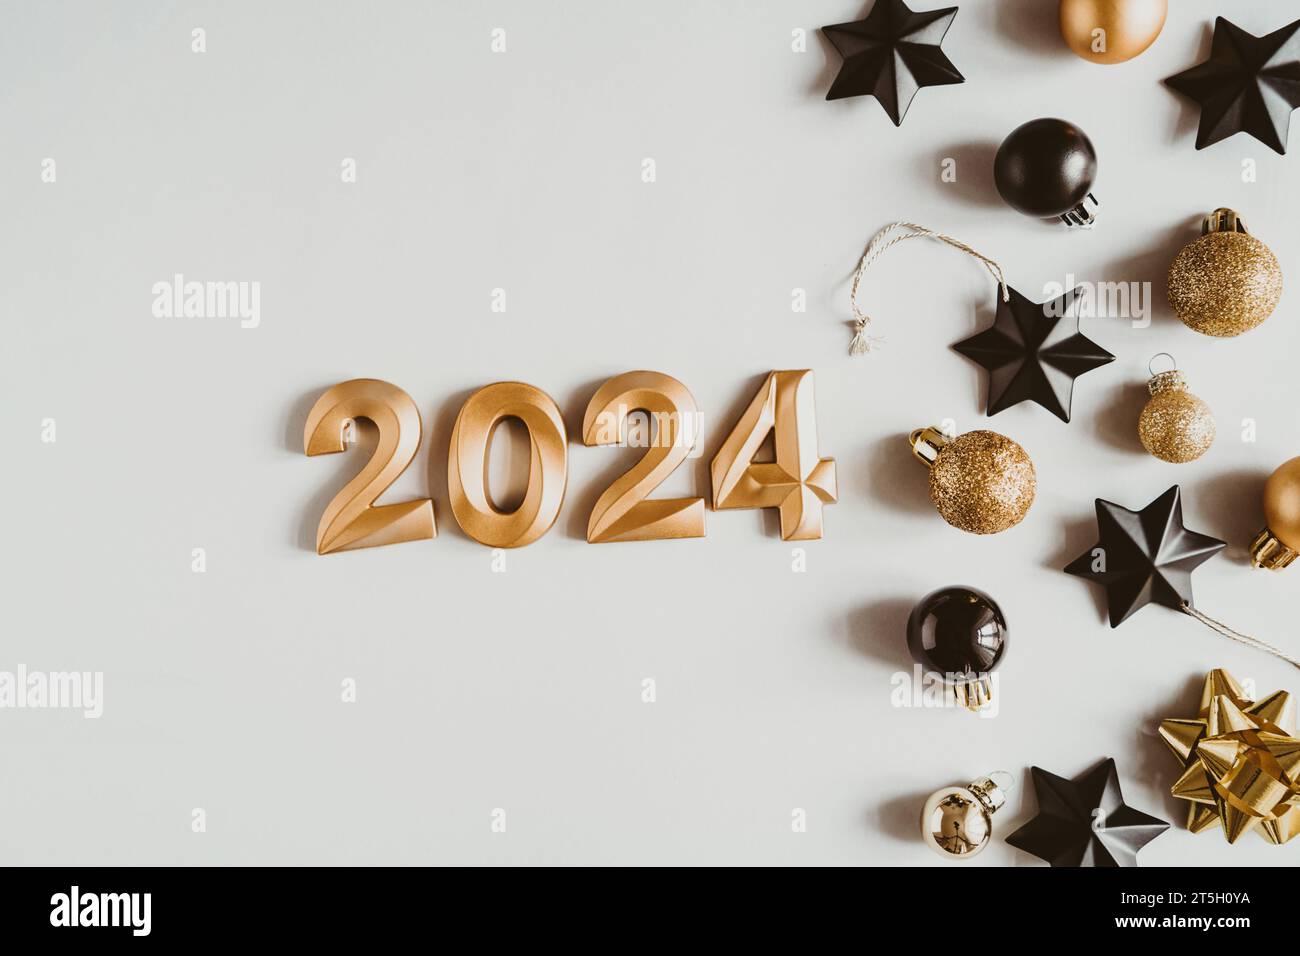 Fond De Vacances Bonne Année 2024. Numéros De L'année 2024